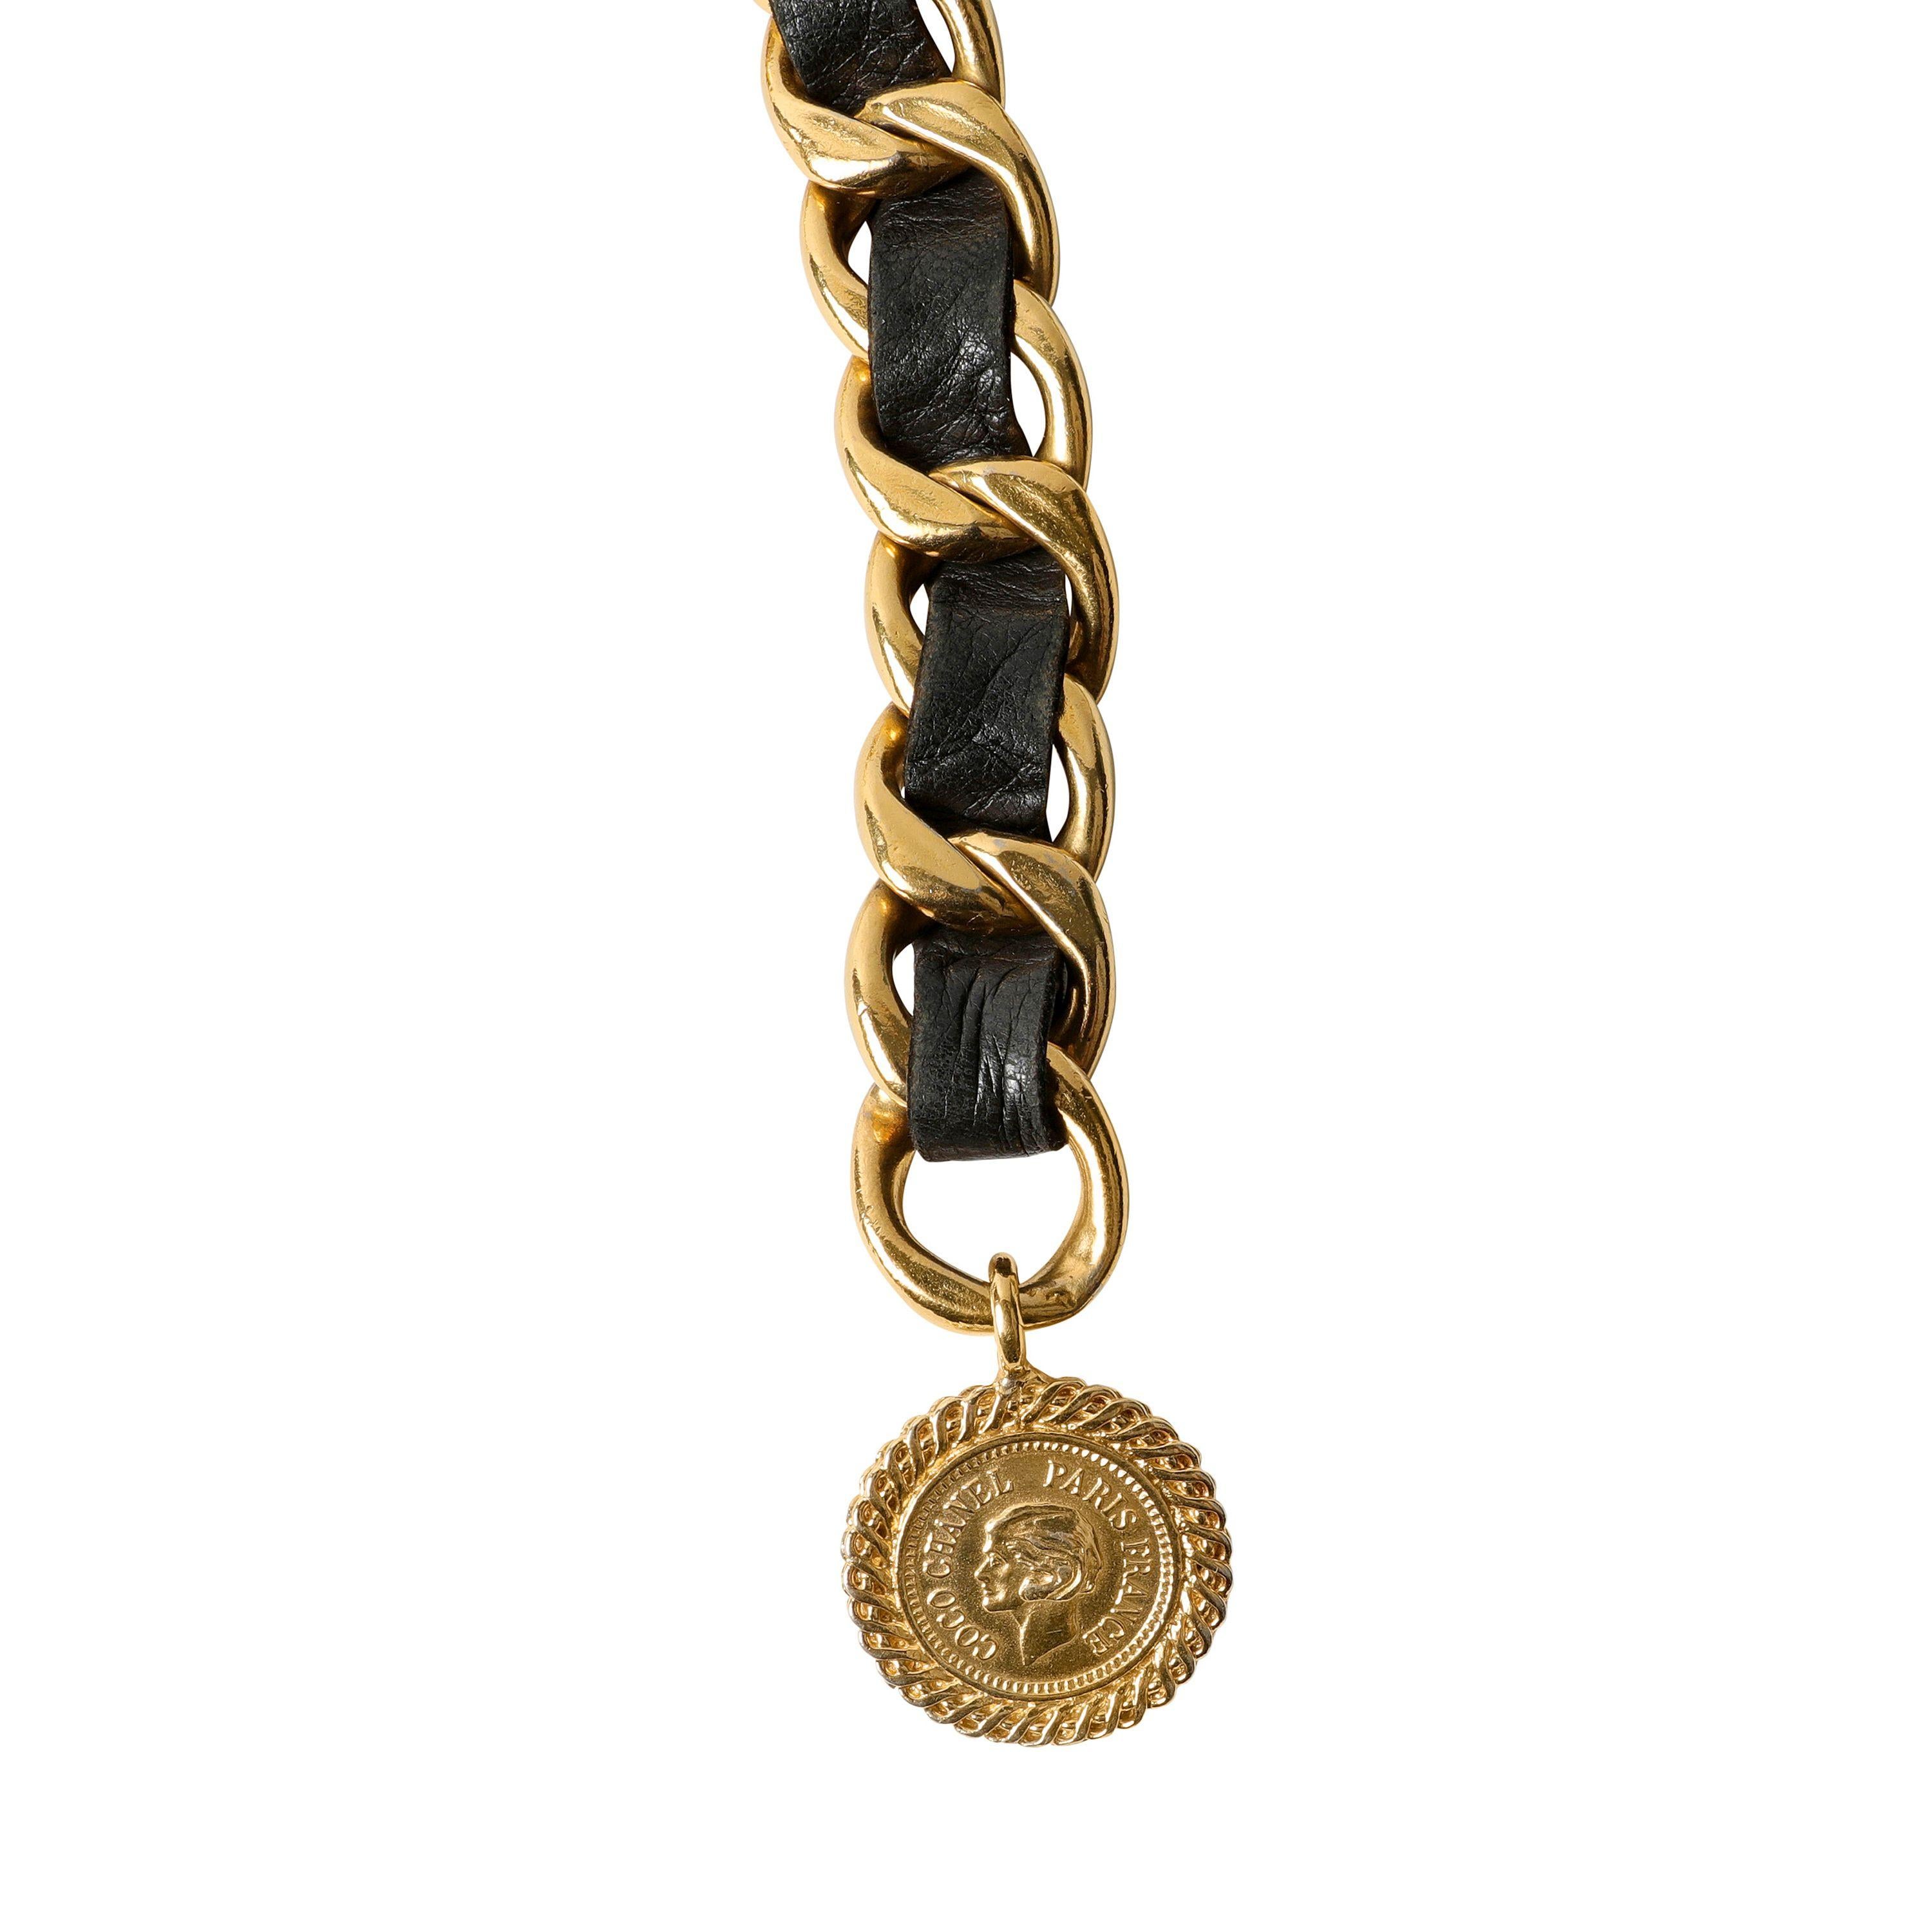 Cette authentique ceinture en cuir noir et chaîne dorée de Chanel est en excellent état vintage.  Véritable classique, ce modèle à chaîne drapée est polyvalent et toujours chic. 
Le cuir noir est entrelacé avec une chaîne à maillons dorés.  Un grand